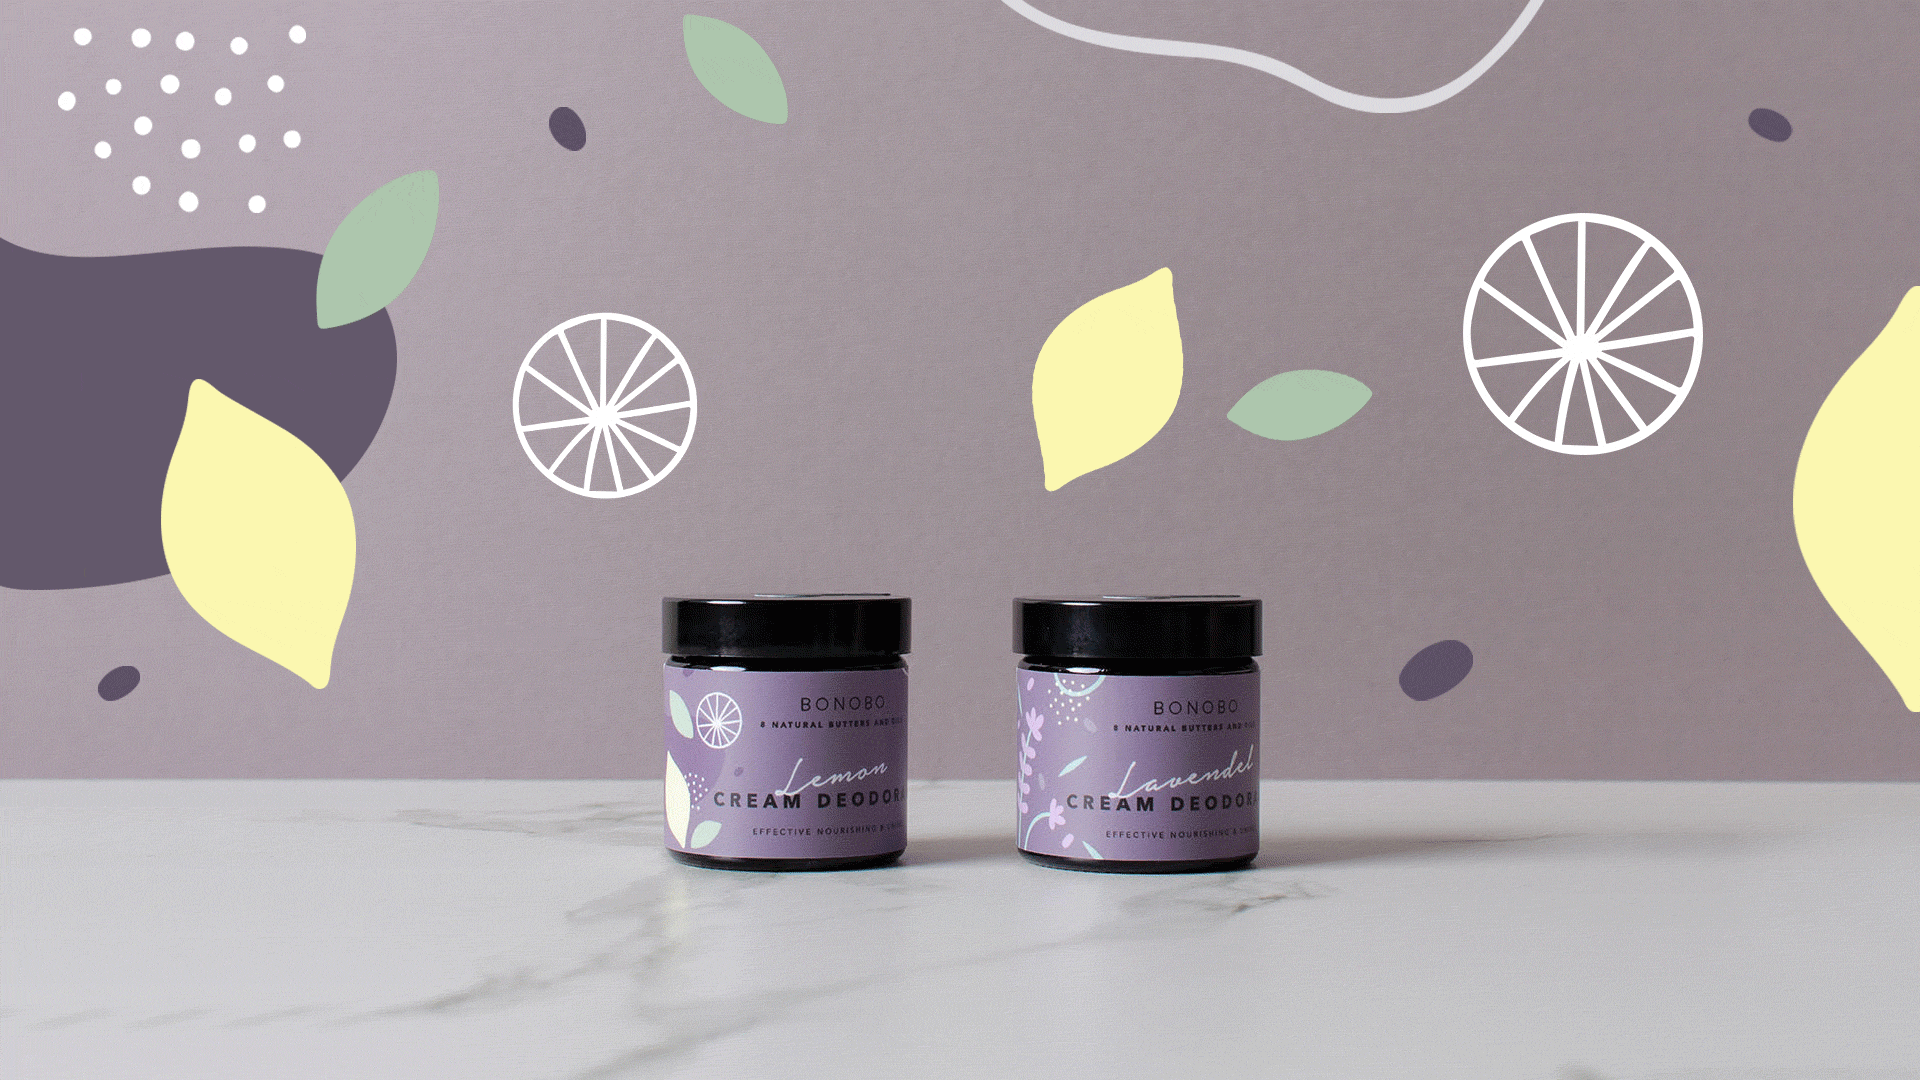 Lavendel Deodorant-Cream - RUUD Studios